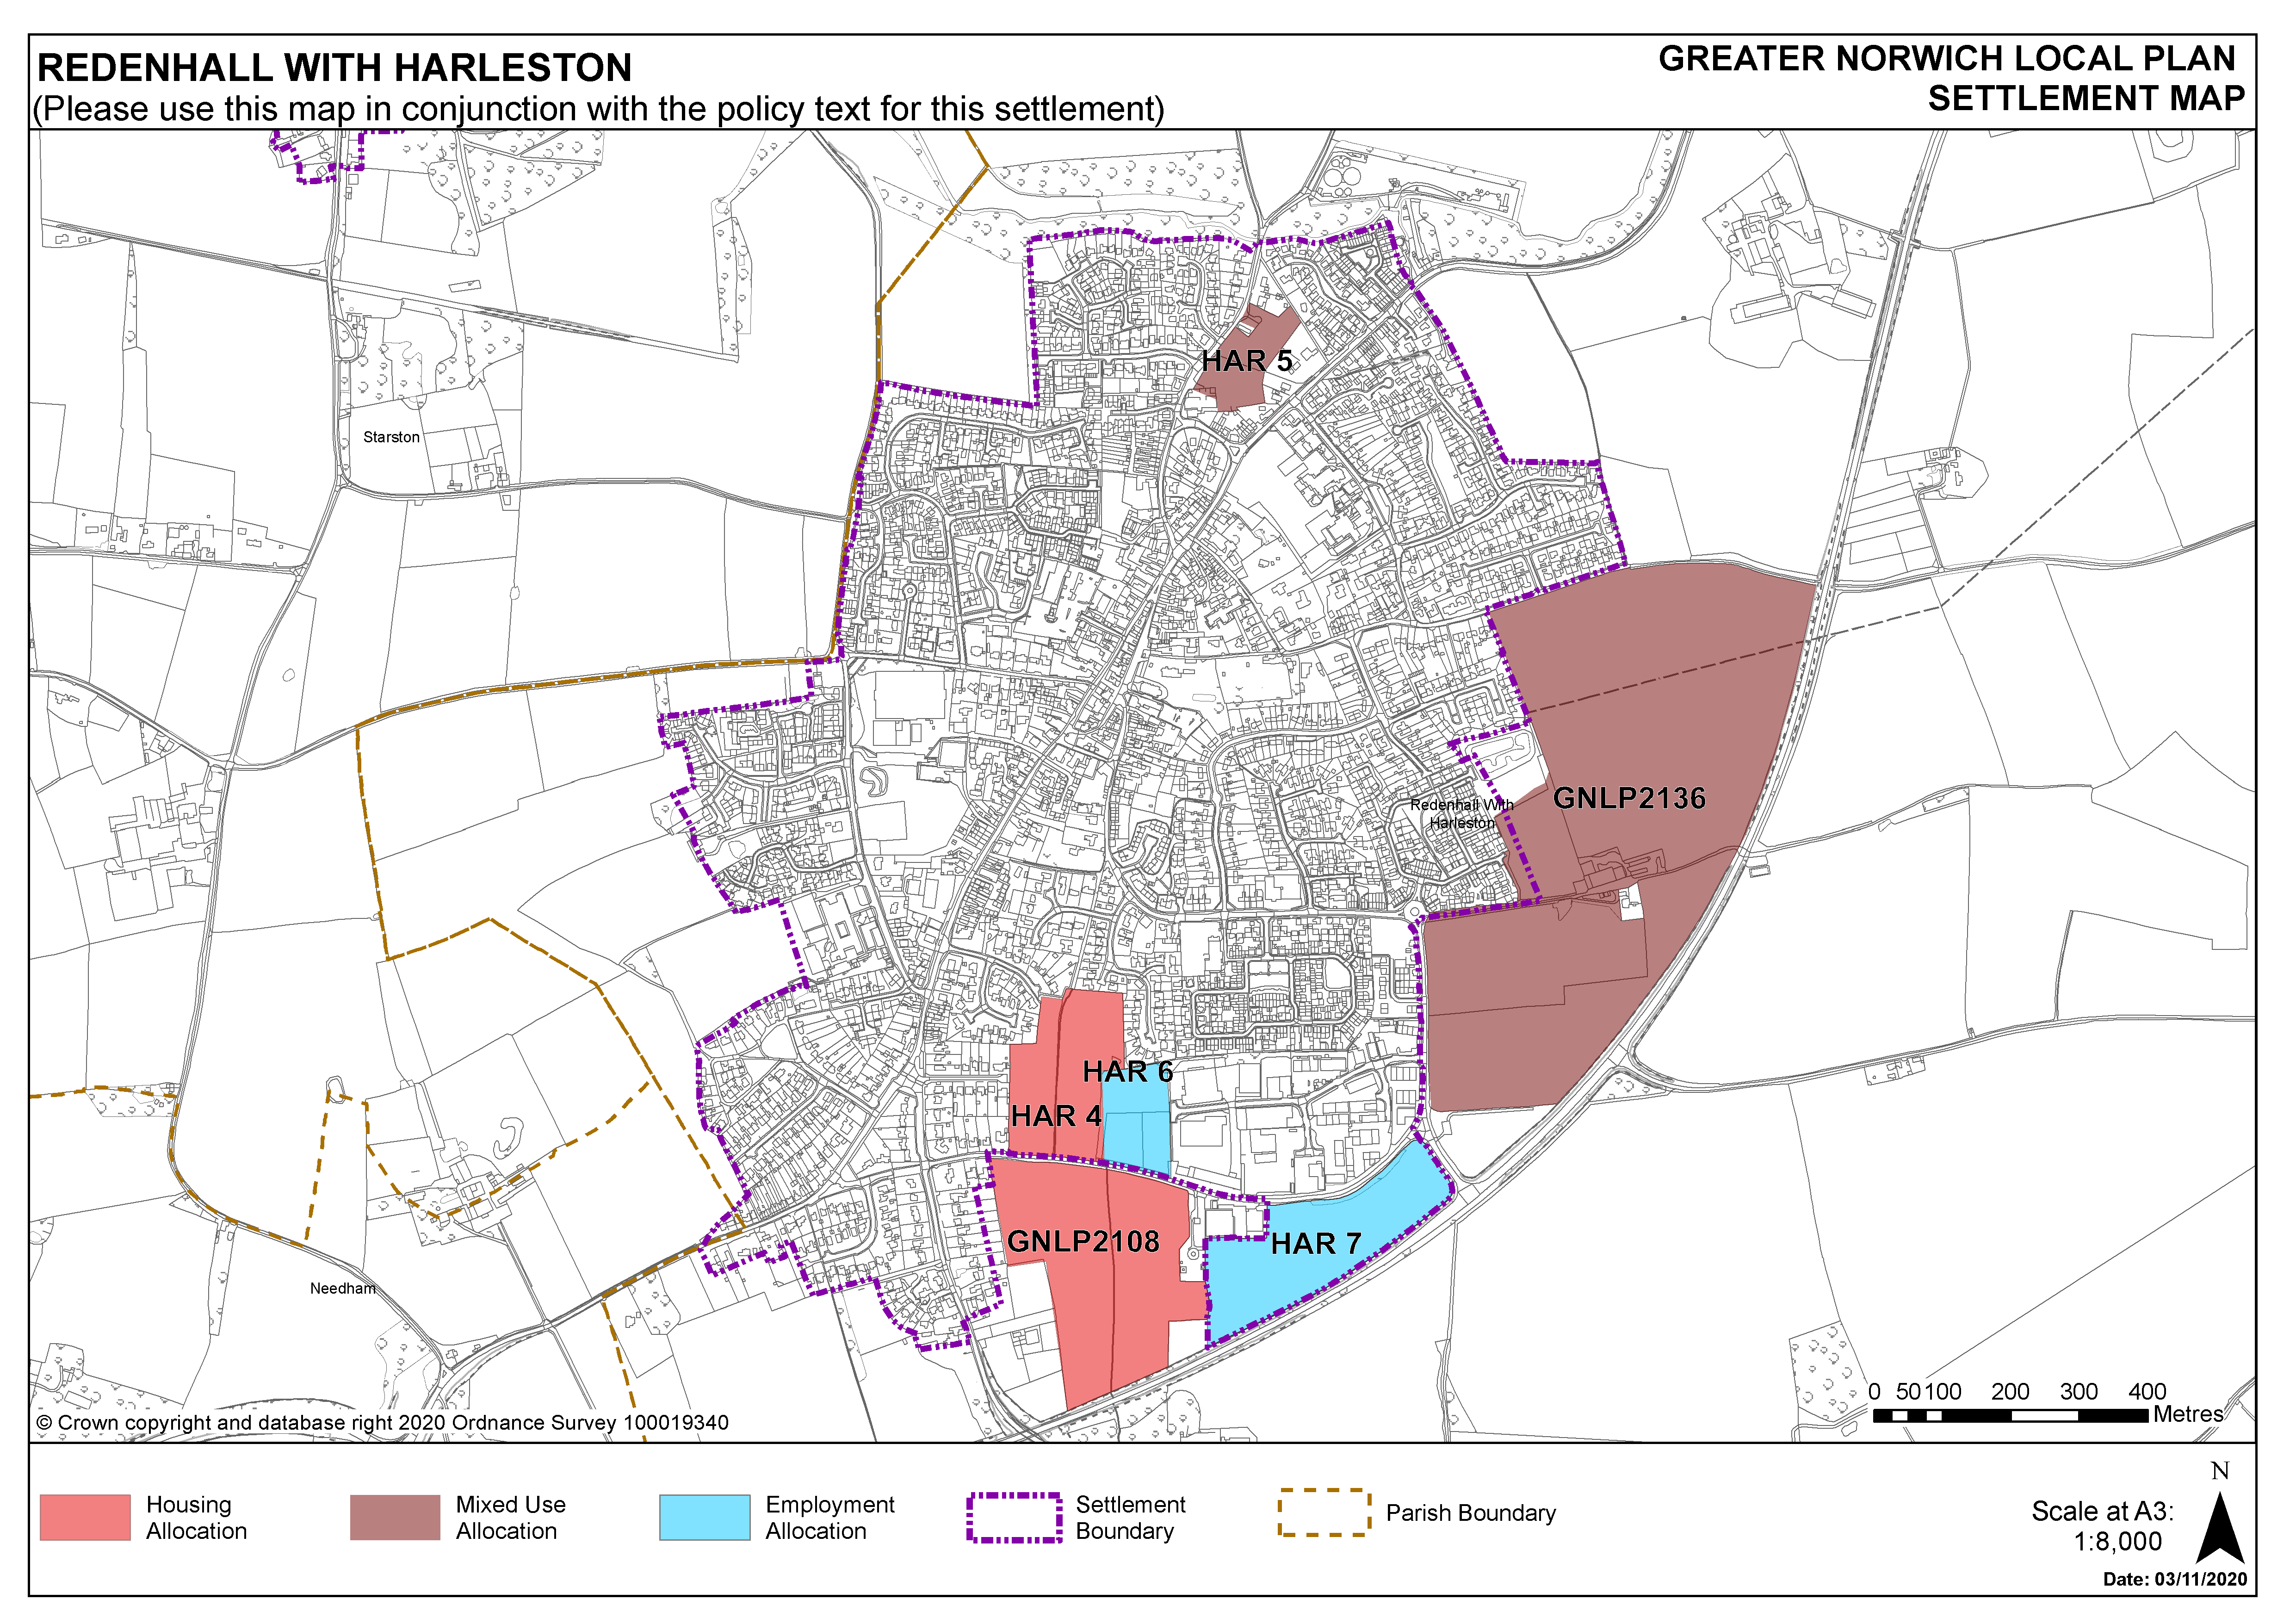 Harleston Settlement Map